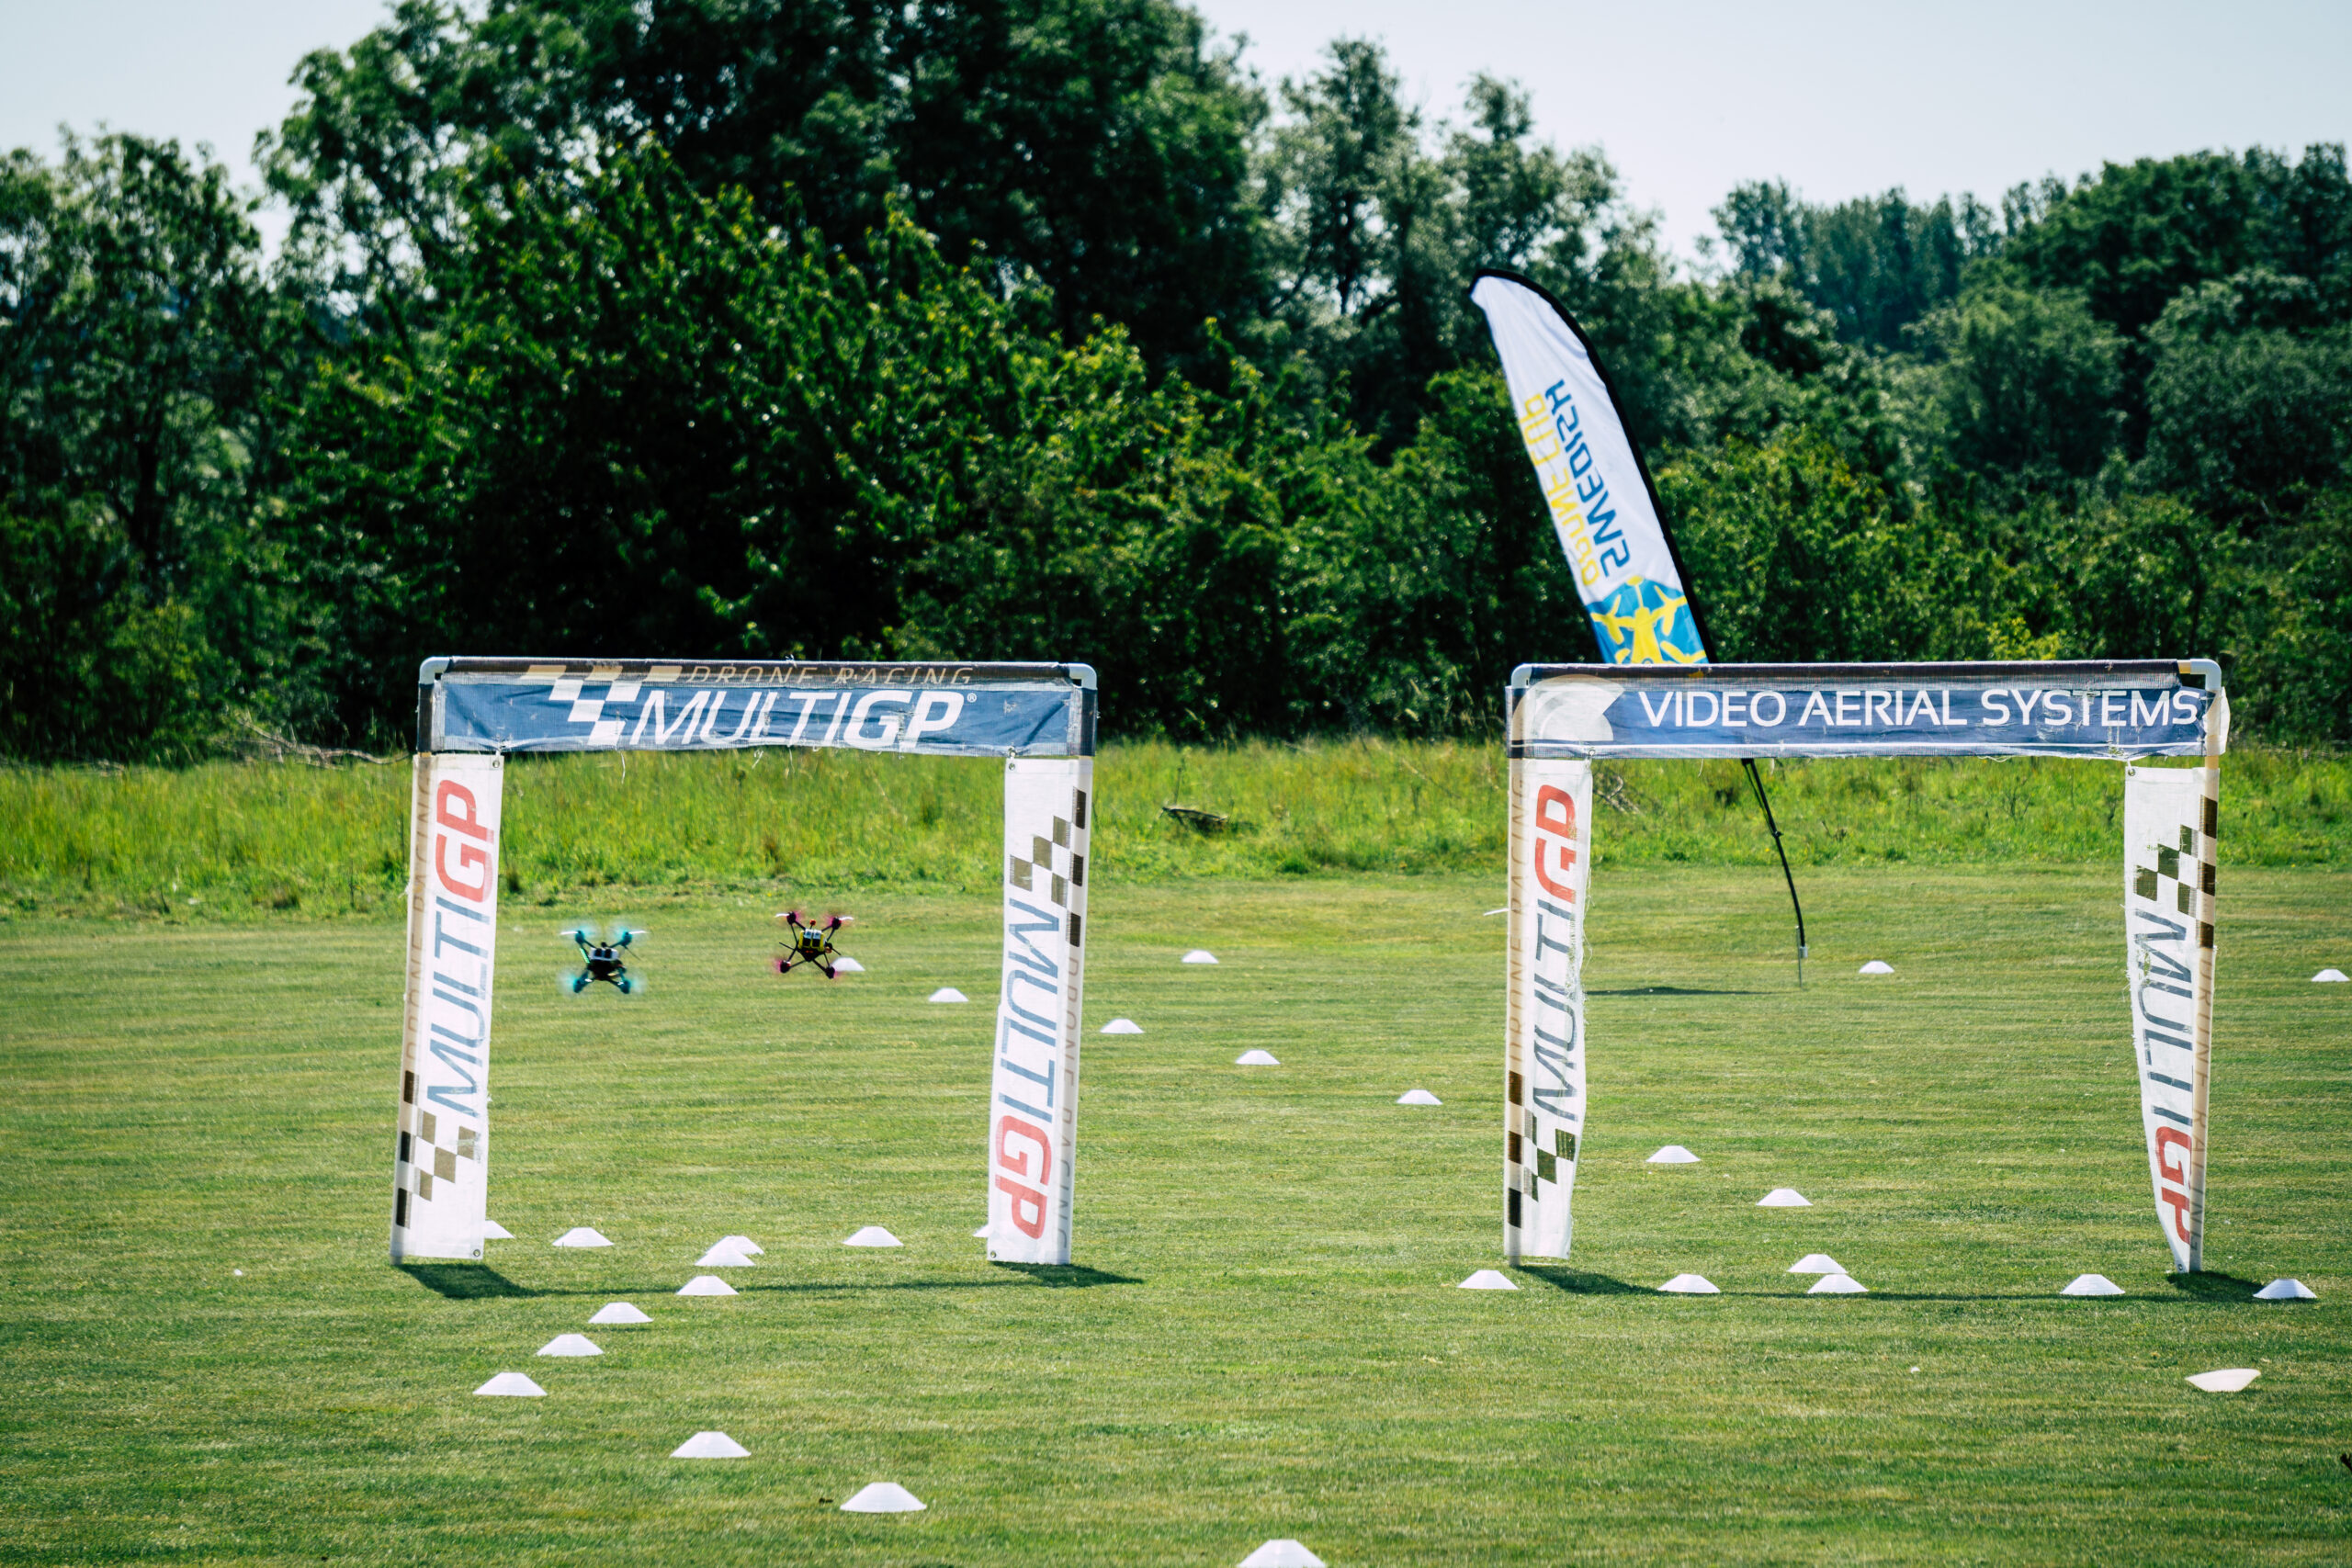 Du visar för närvarande 13:e maj hölls tävling i Drone Racing